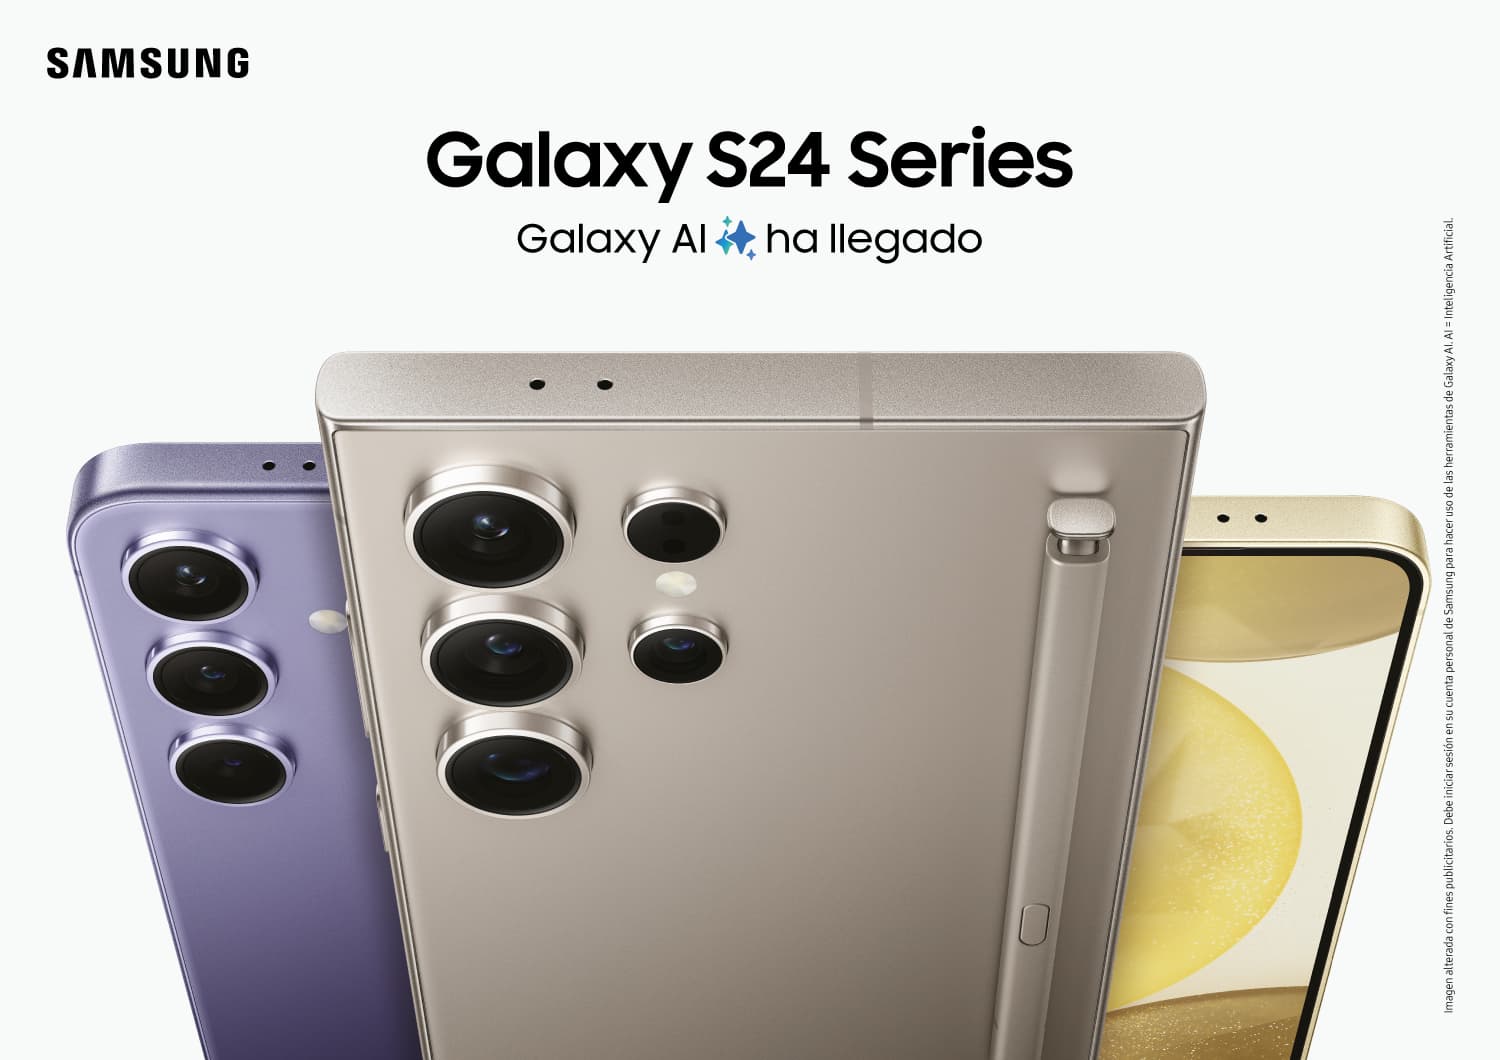 Los nuevos Samsung Galaxy S23, Galaxy S23+ y Galaxy S23 Ultra ya se pueden  comprar con Vodafone Flex